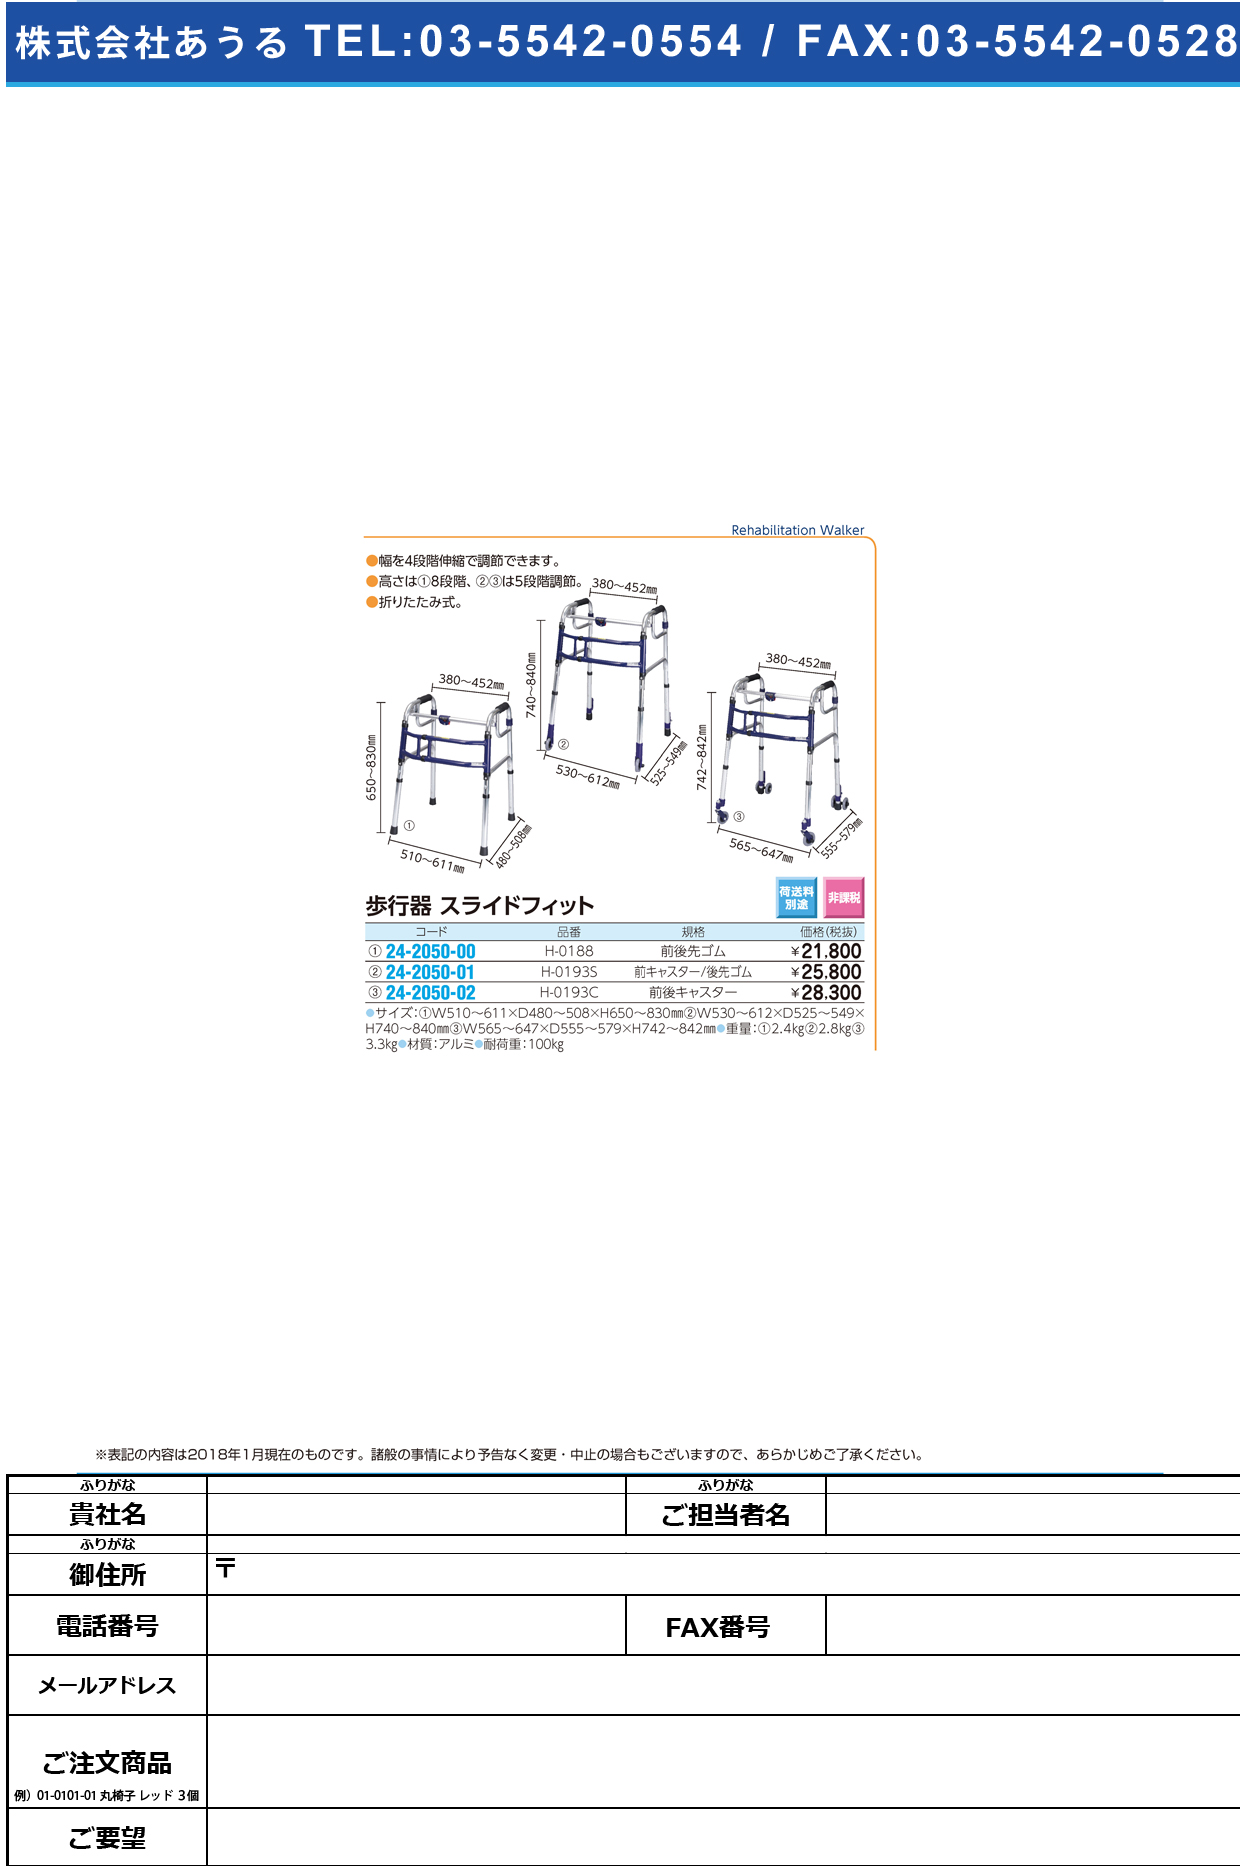 (24-2050-01)スライドフィット（Ｈタイプ） H-0193S(ｷｬｽﾀｰ/ｻｷｺﾞﾑ) ｽﾗｲﾄﾞﾌｨｯﾄ(Hﾀｲﾌﾟ)【1台単位】【2018年カタログ商品】